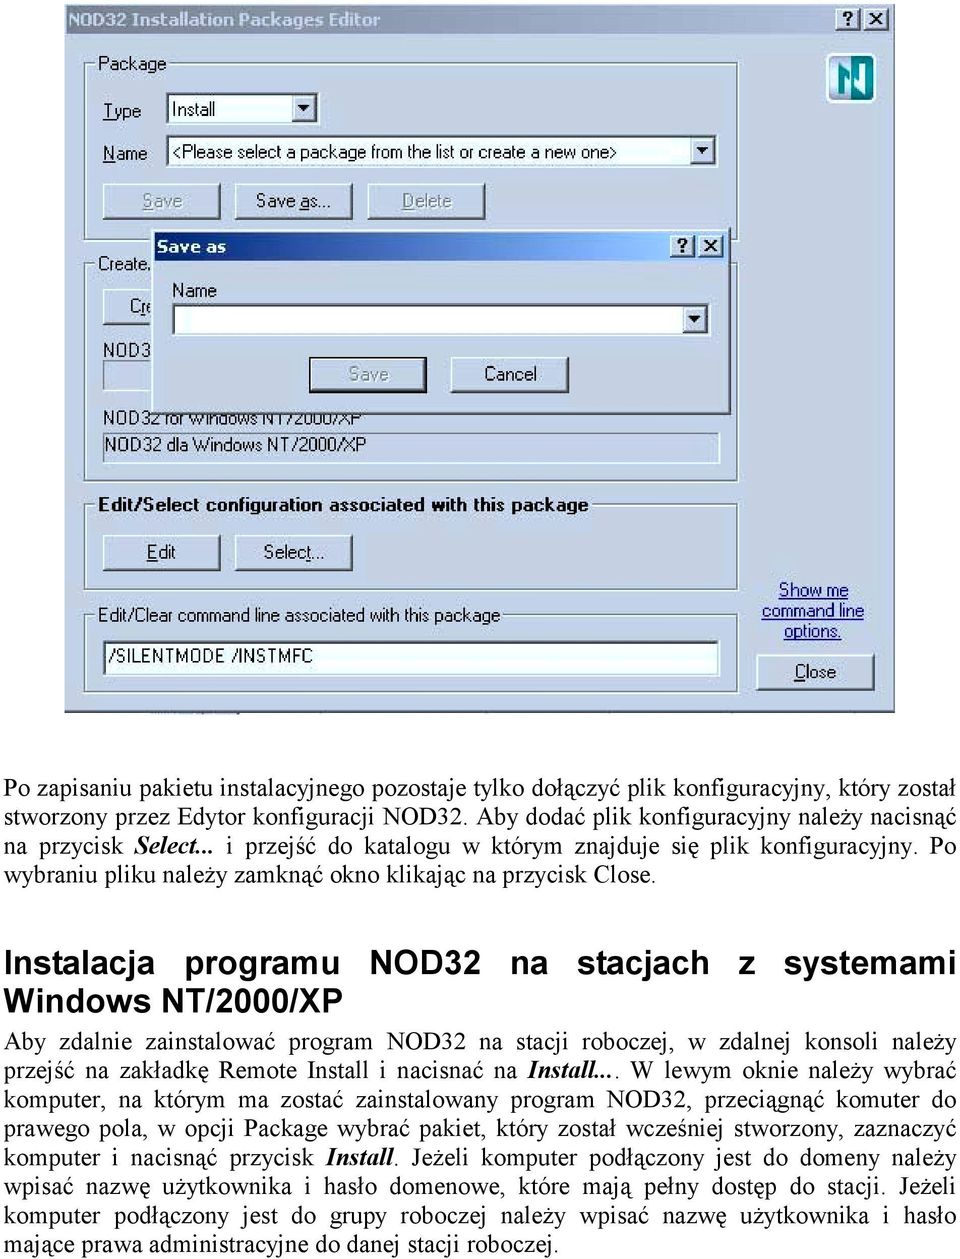 Instalacja programu NOD32 na stacjach z systemami Windows NT/2000/XP Aby zdalnie zainstalować program NOD32 na stacji roboczej, w zdalnej konsoli należy przejść na zakładkę Remote Install i nacisnać